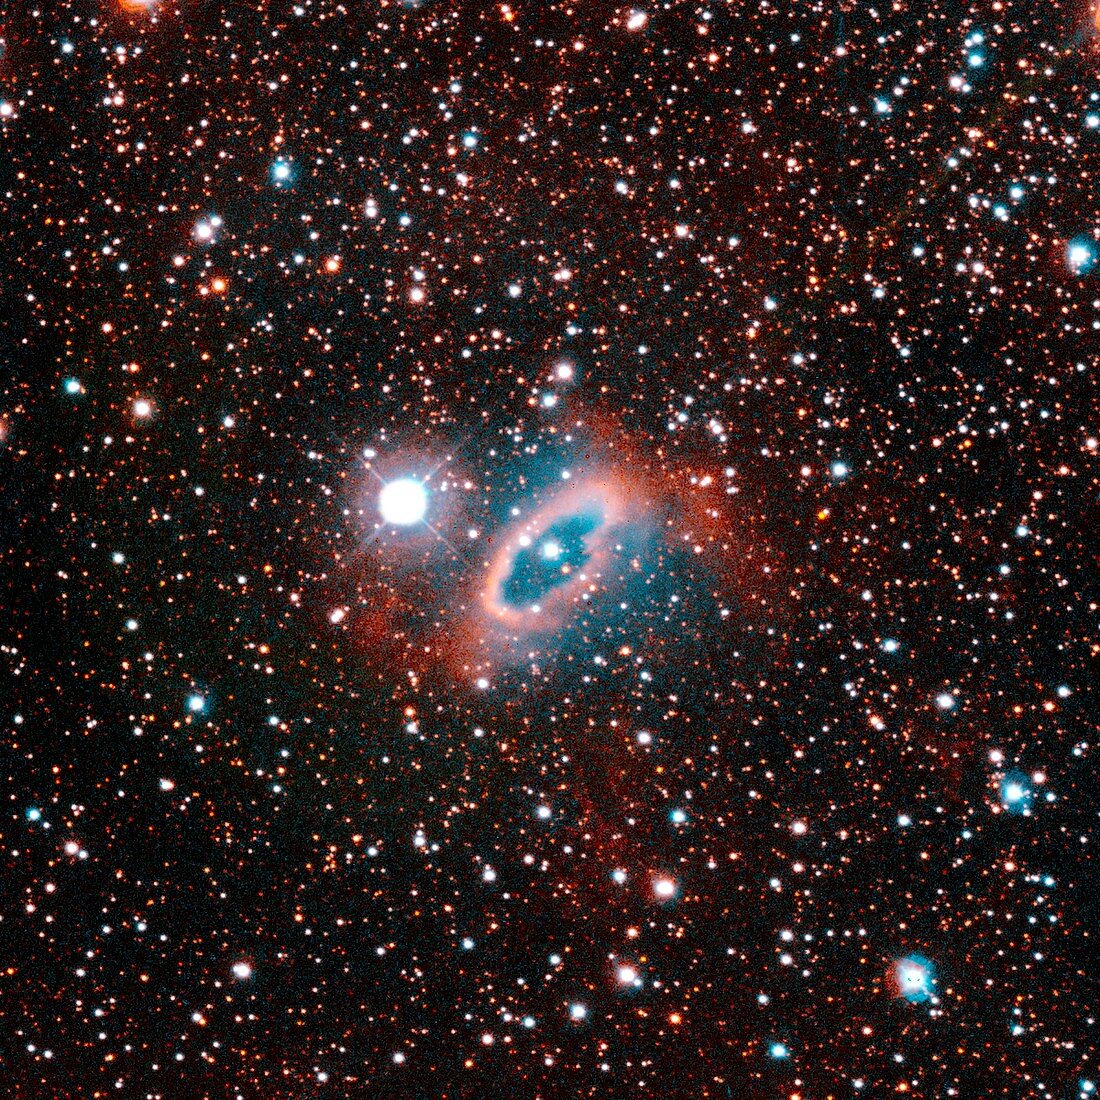 SuWt 2 planetary nebula